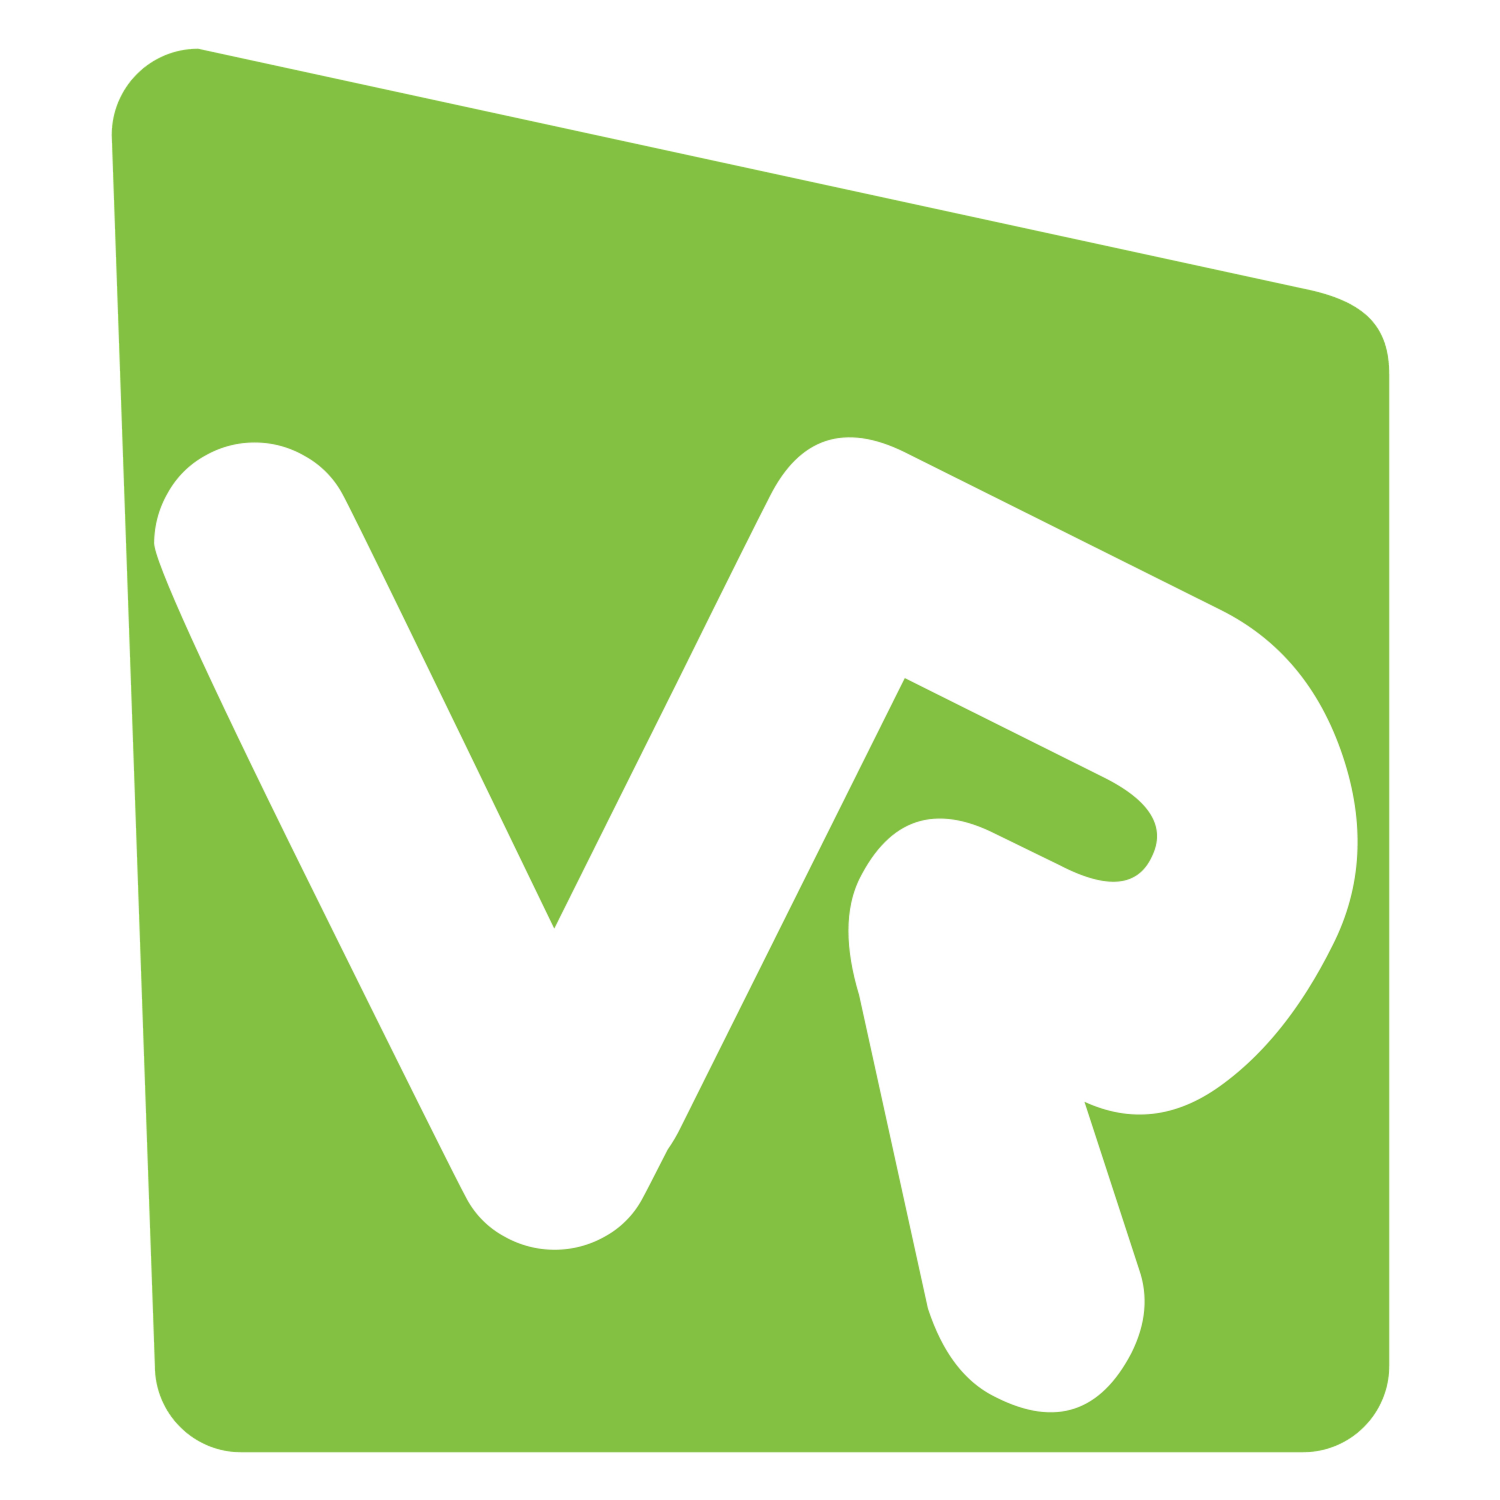 VR Distribution (UK) Limited